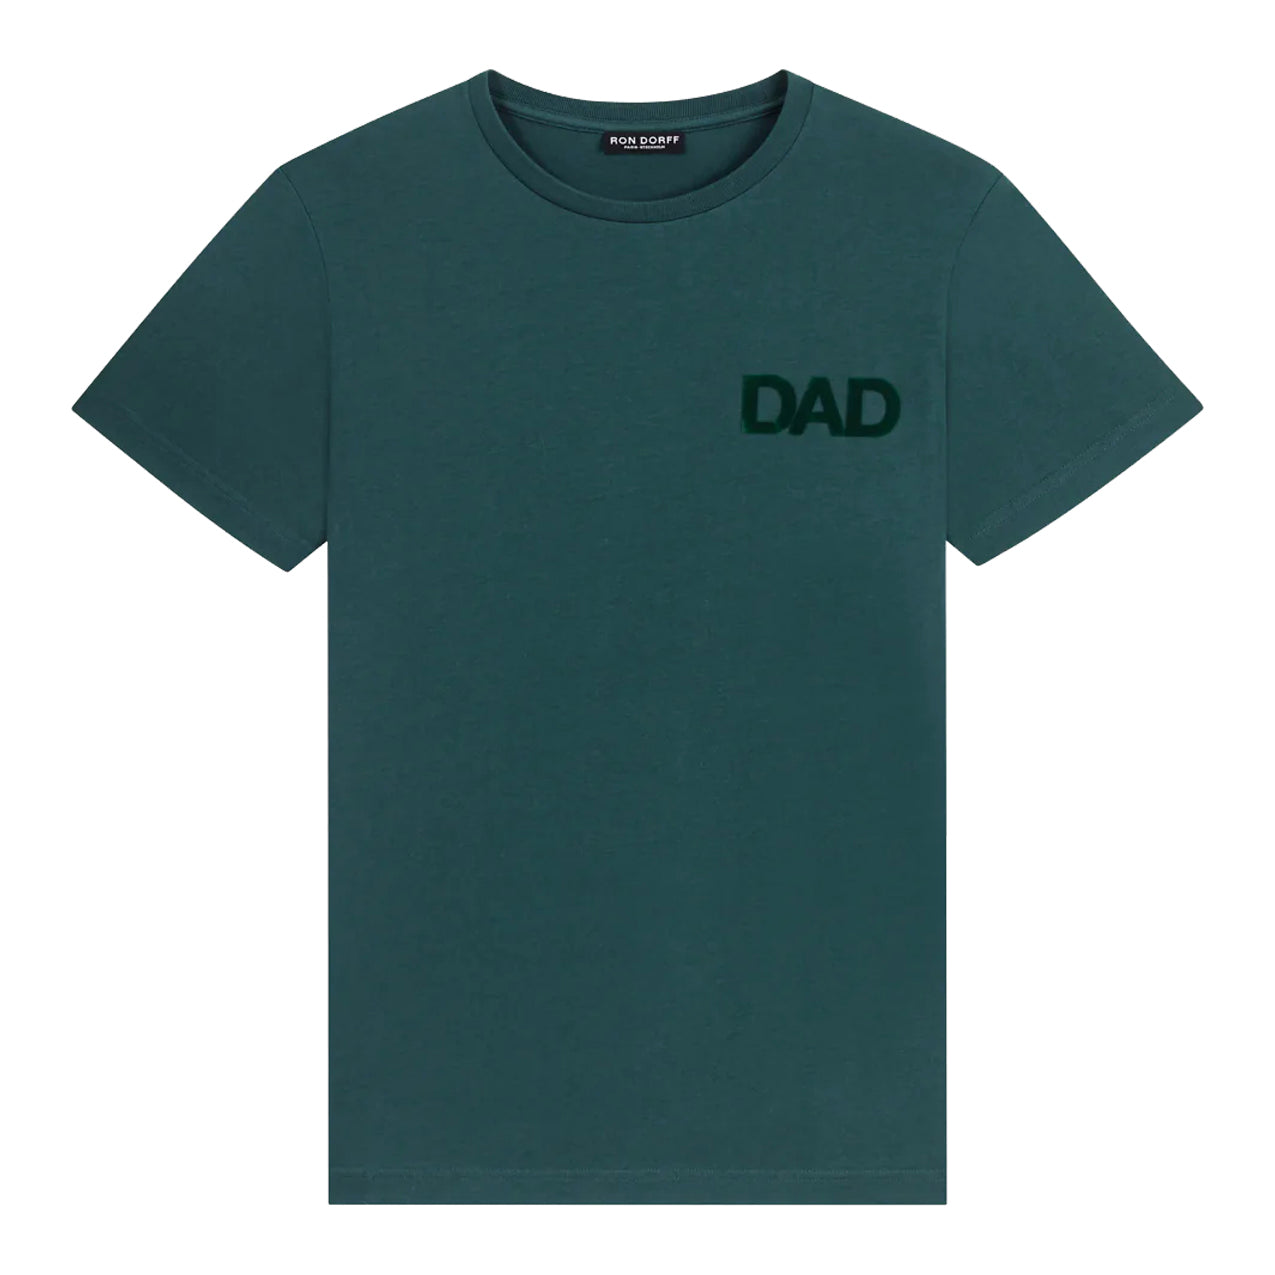 Camiseta DAD Verde. Ron Dorff